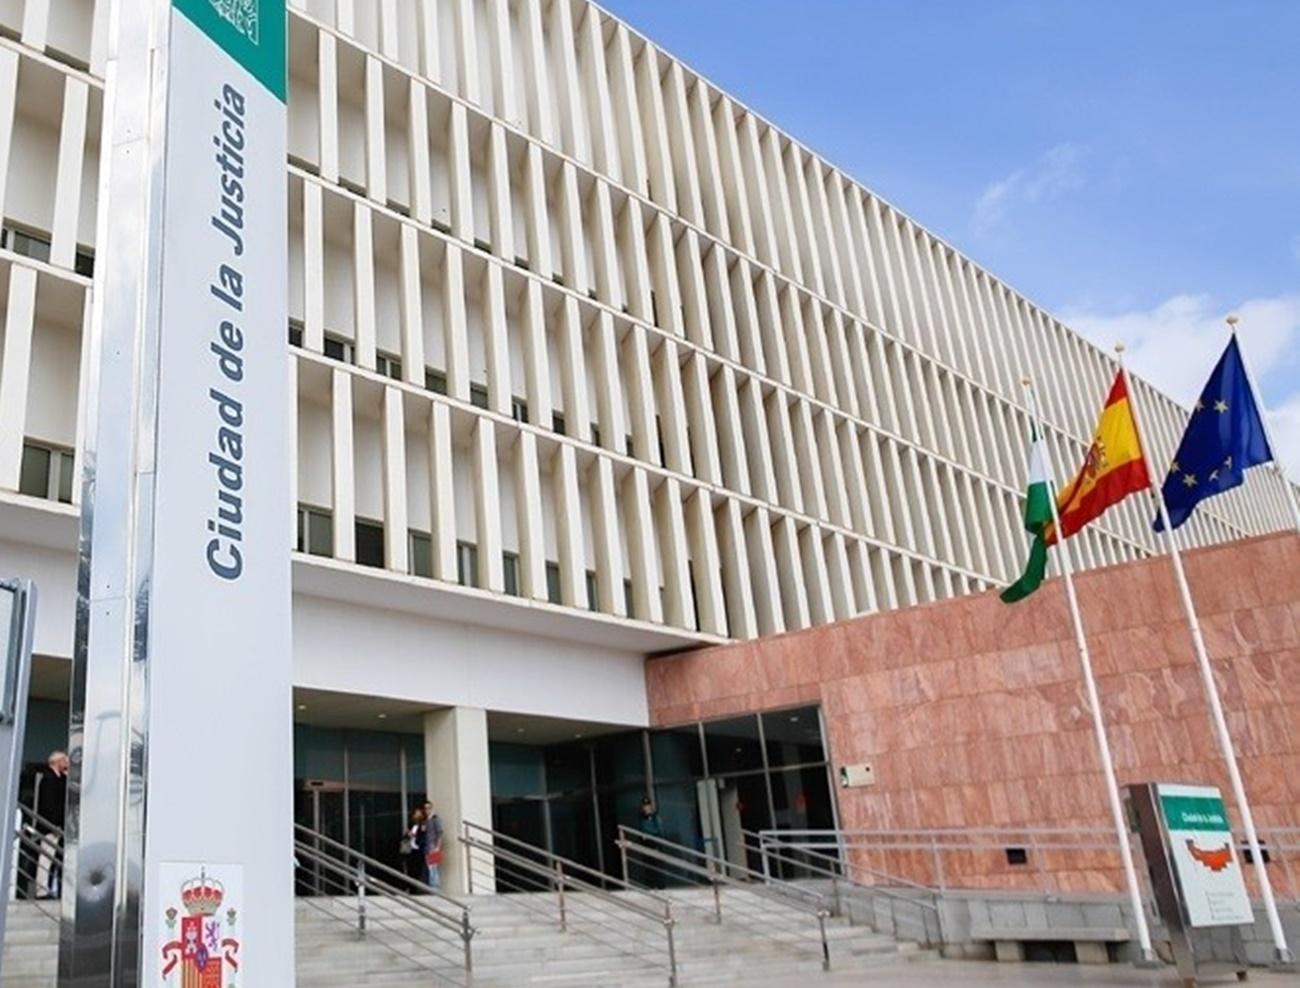 Ciudad de la Justicia Málaga